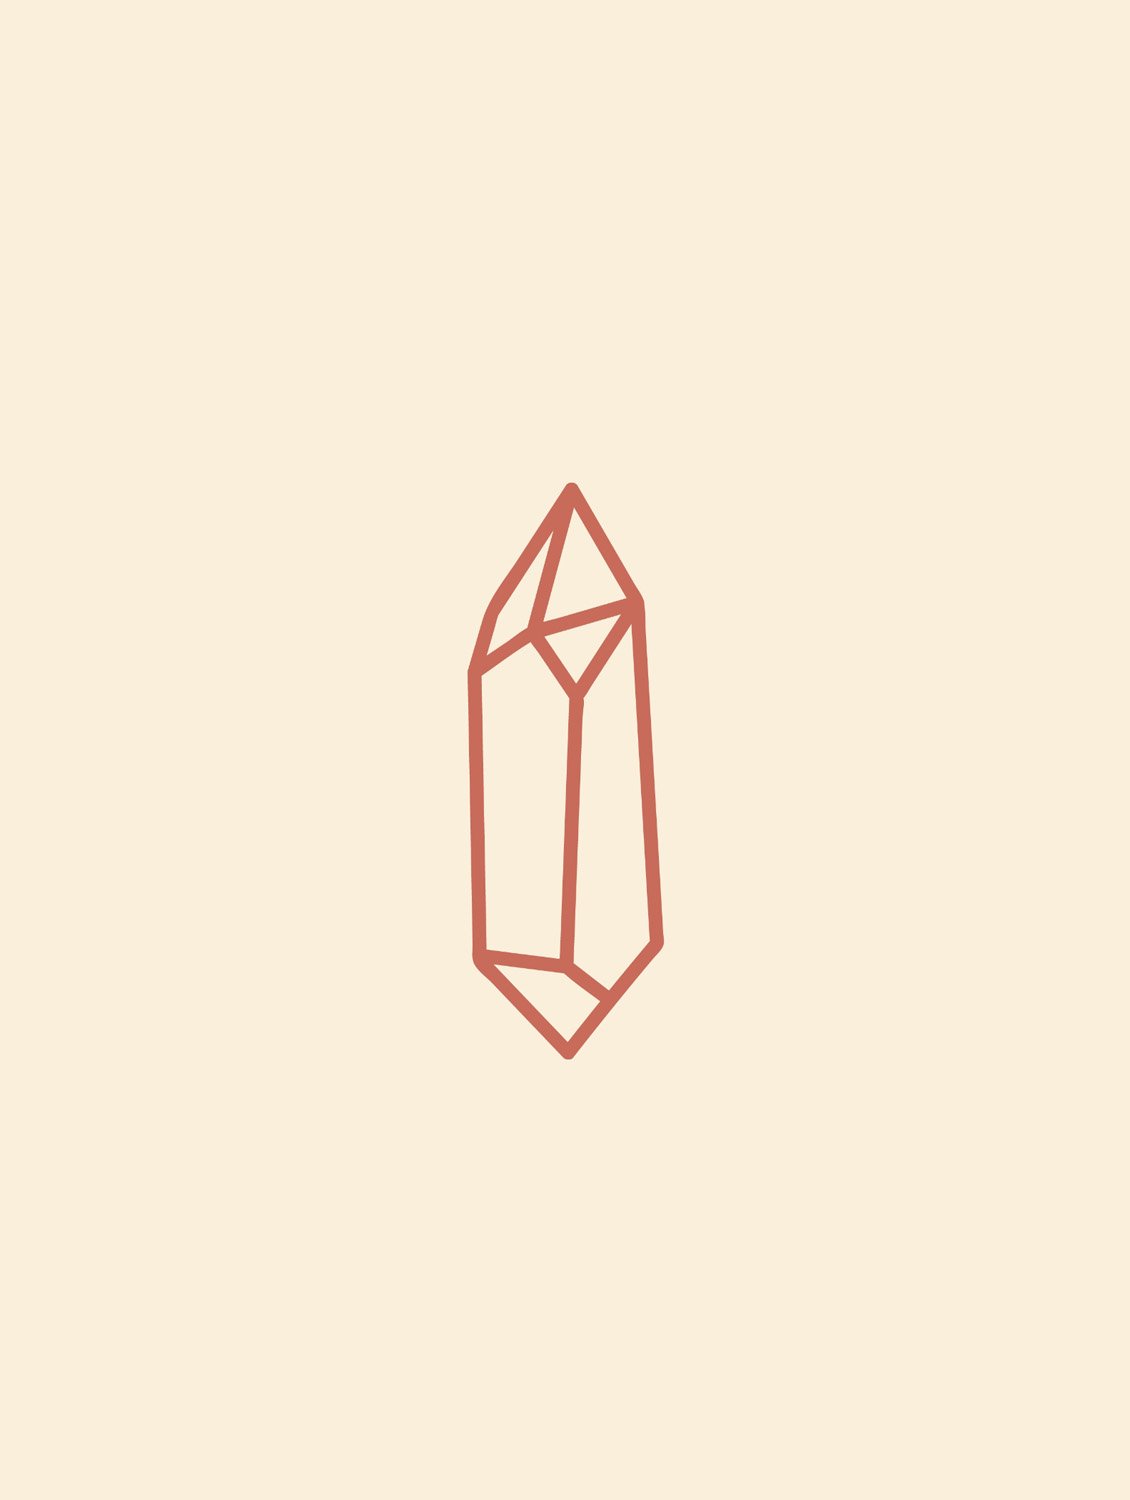 Minimalist crystal icon illustration